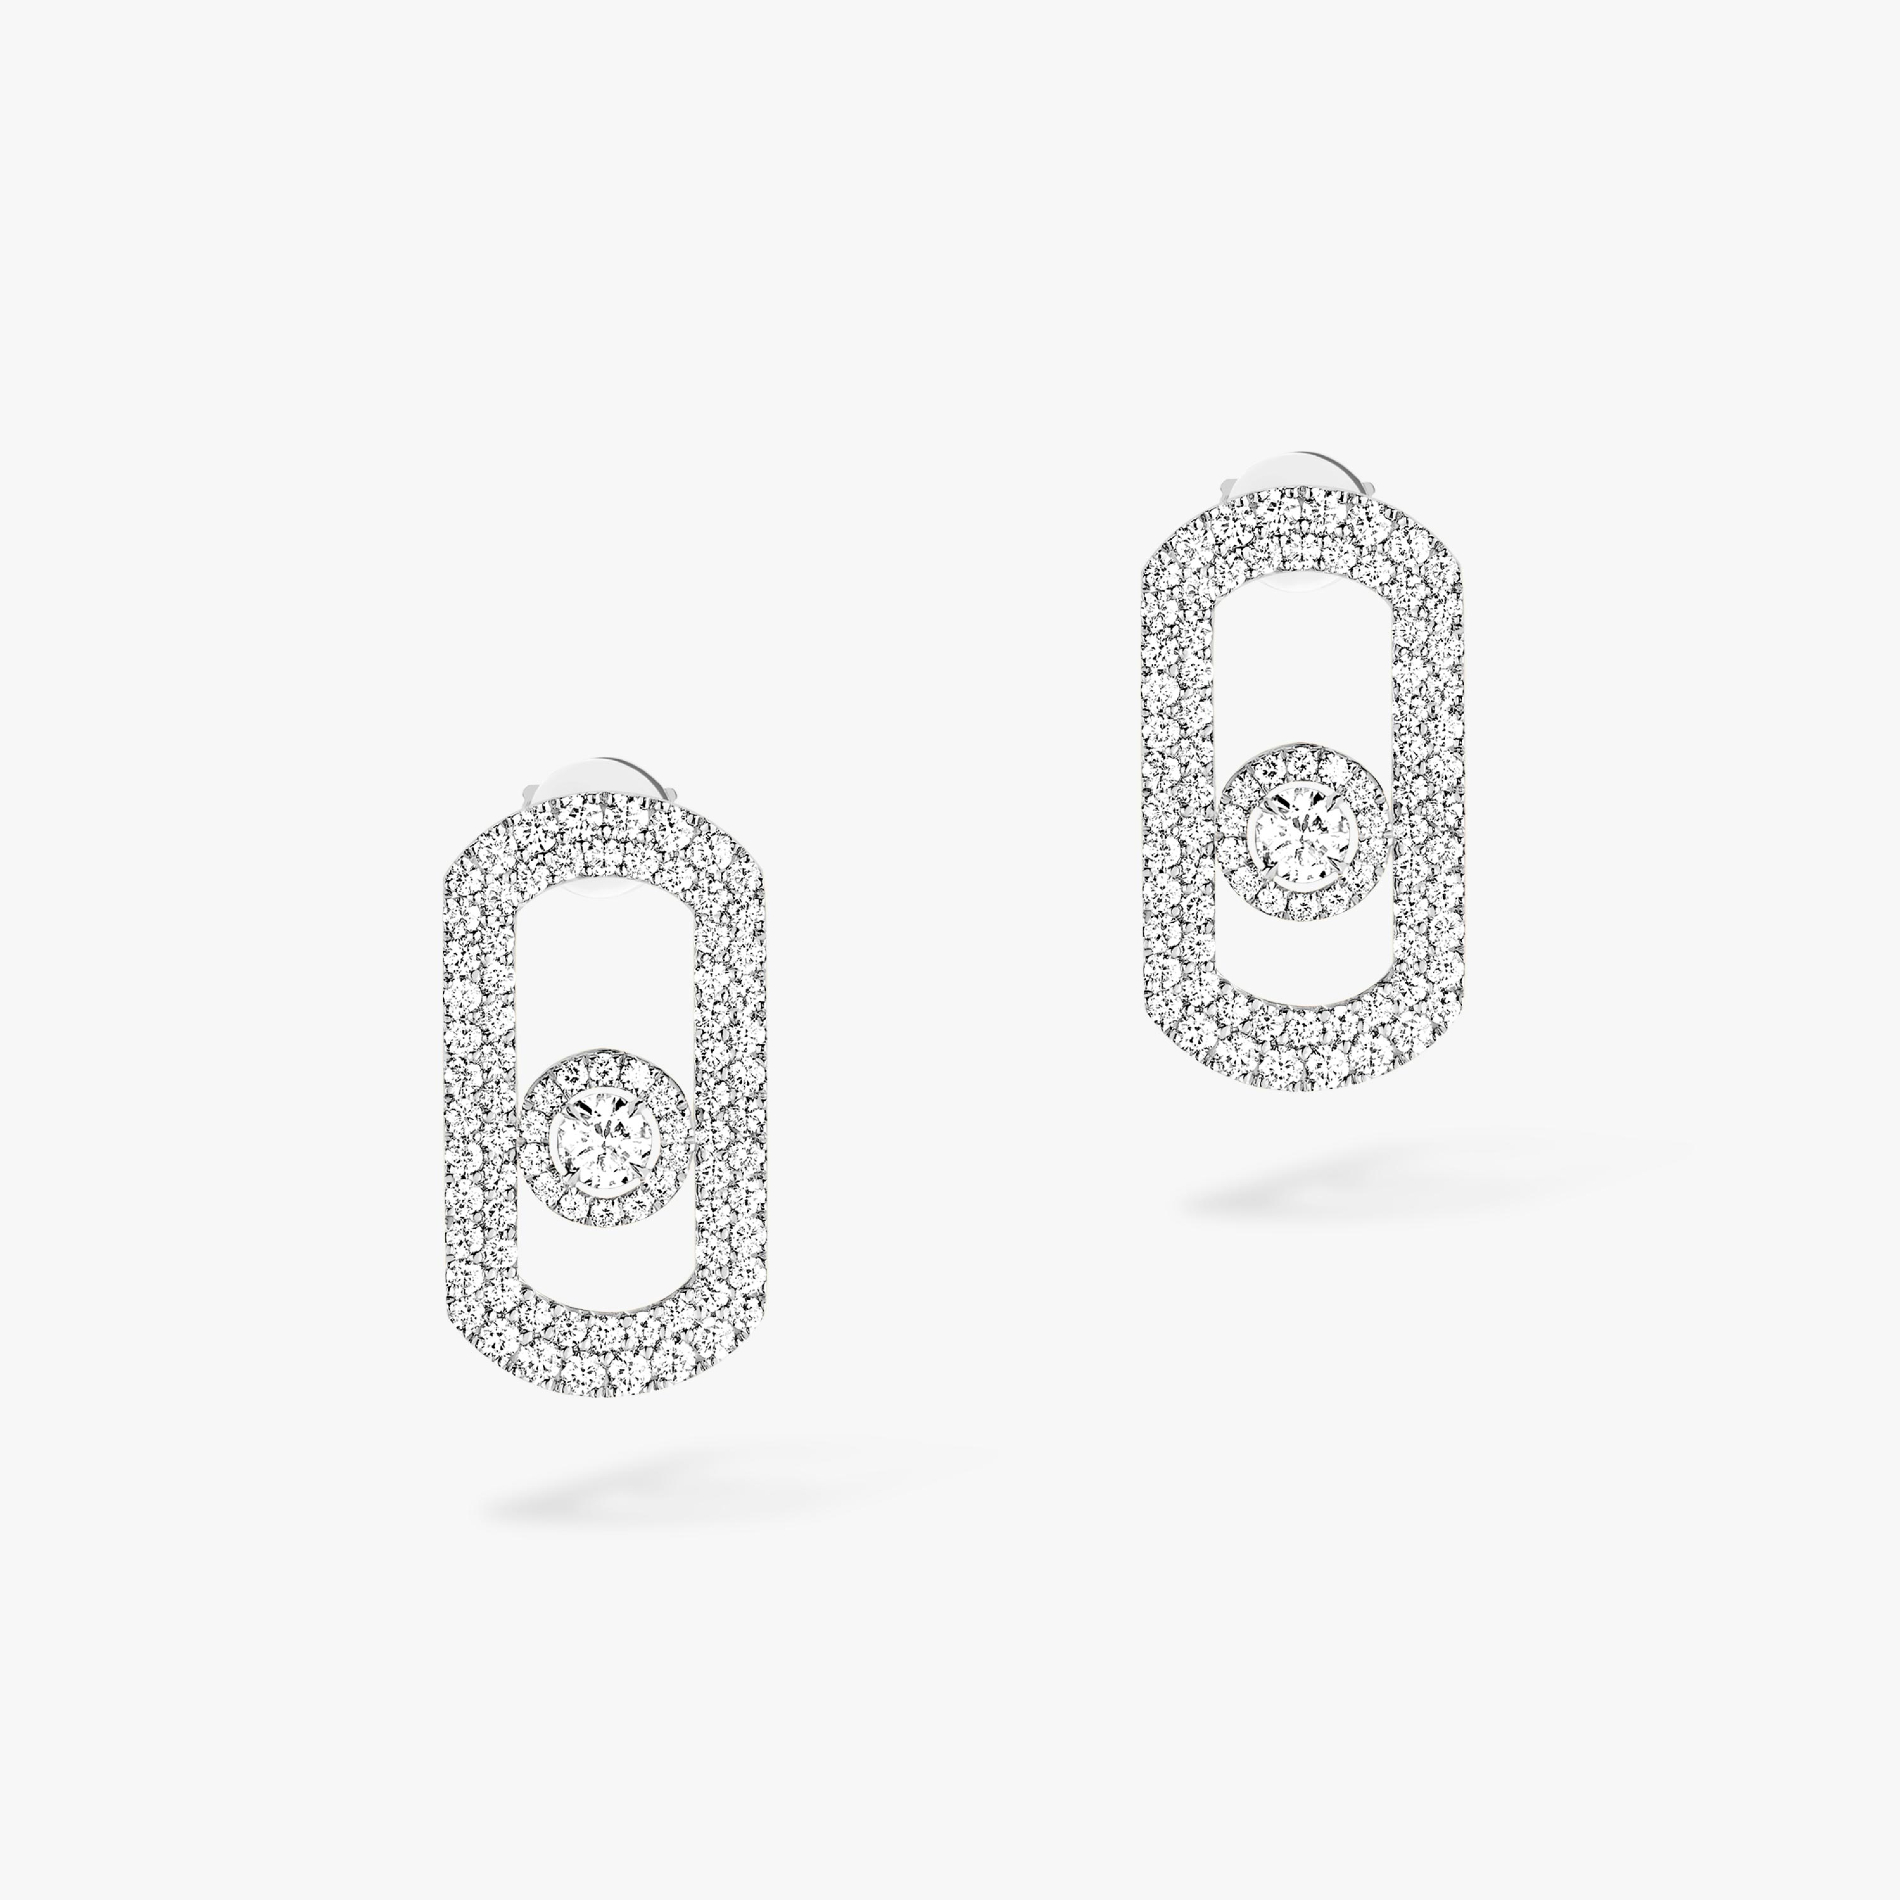 Earrings For Her White Gold Diamond So Move Pavé 12931-WG